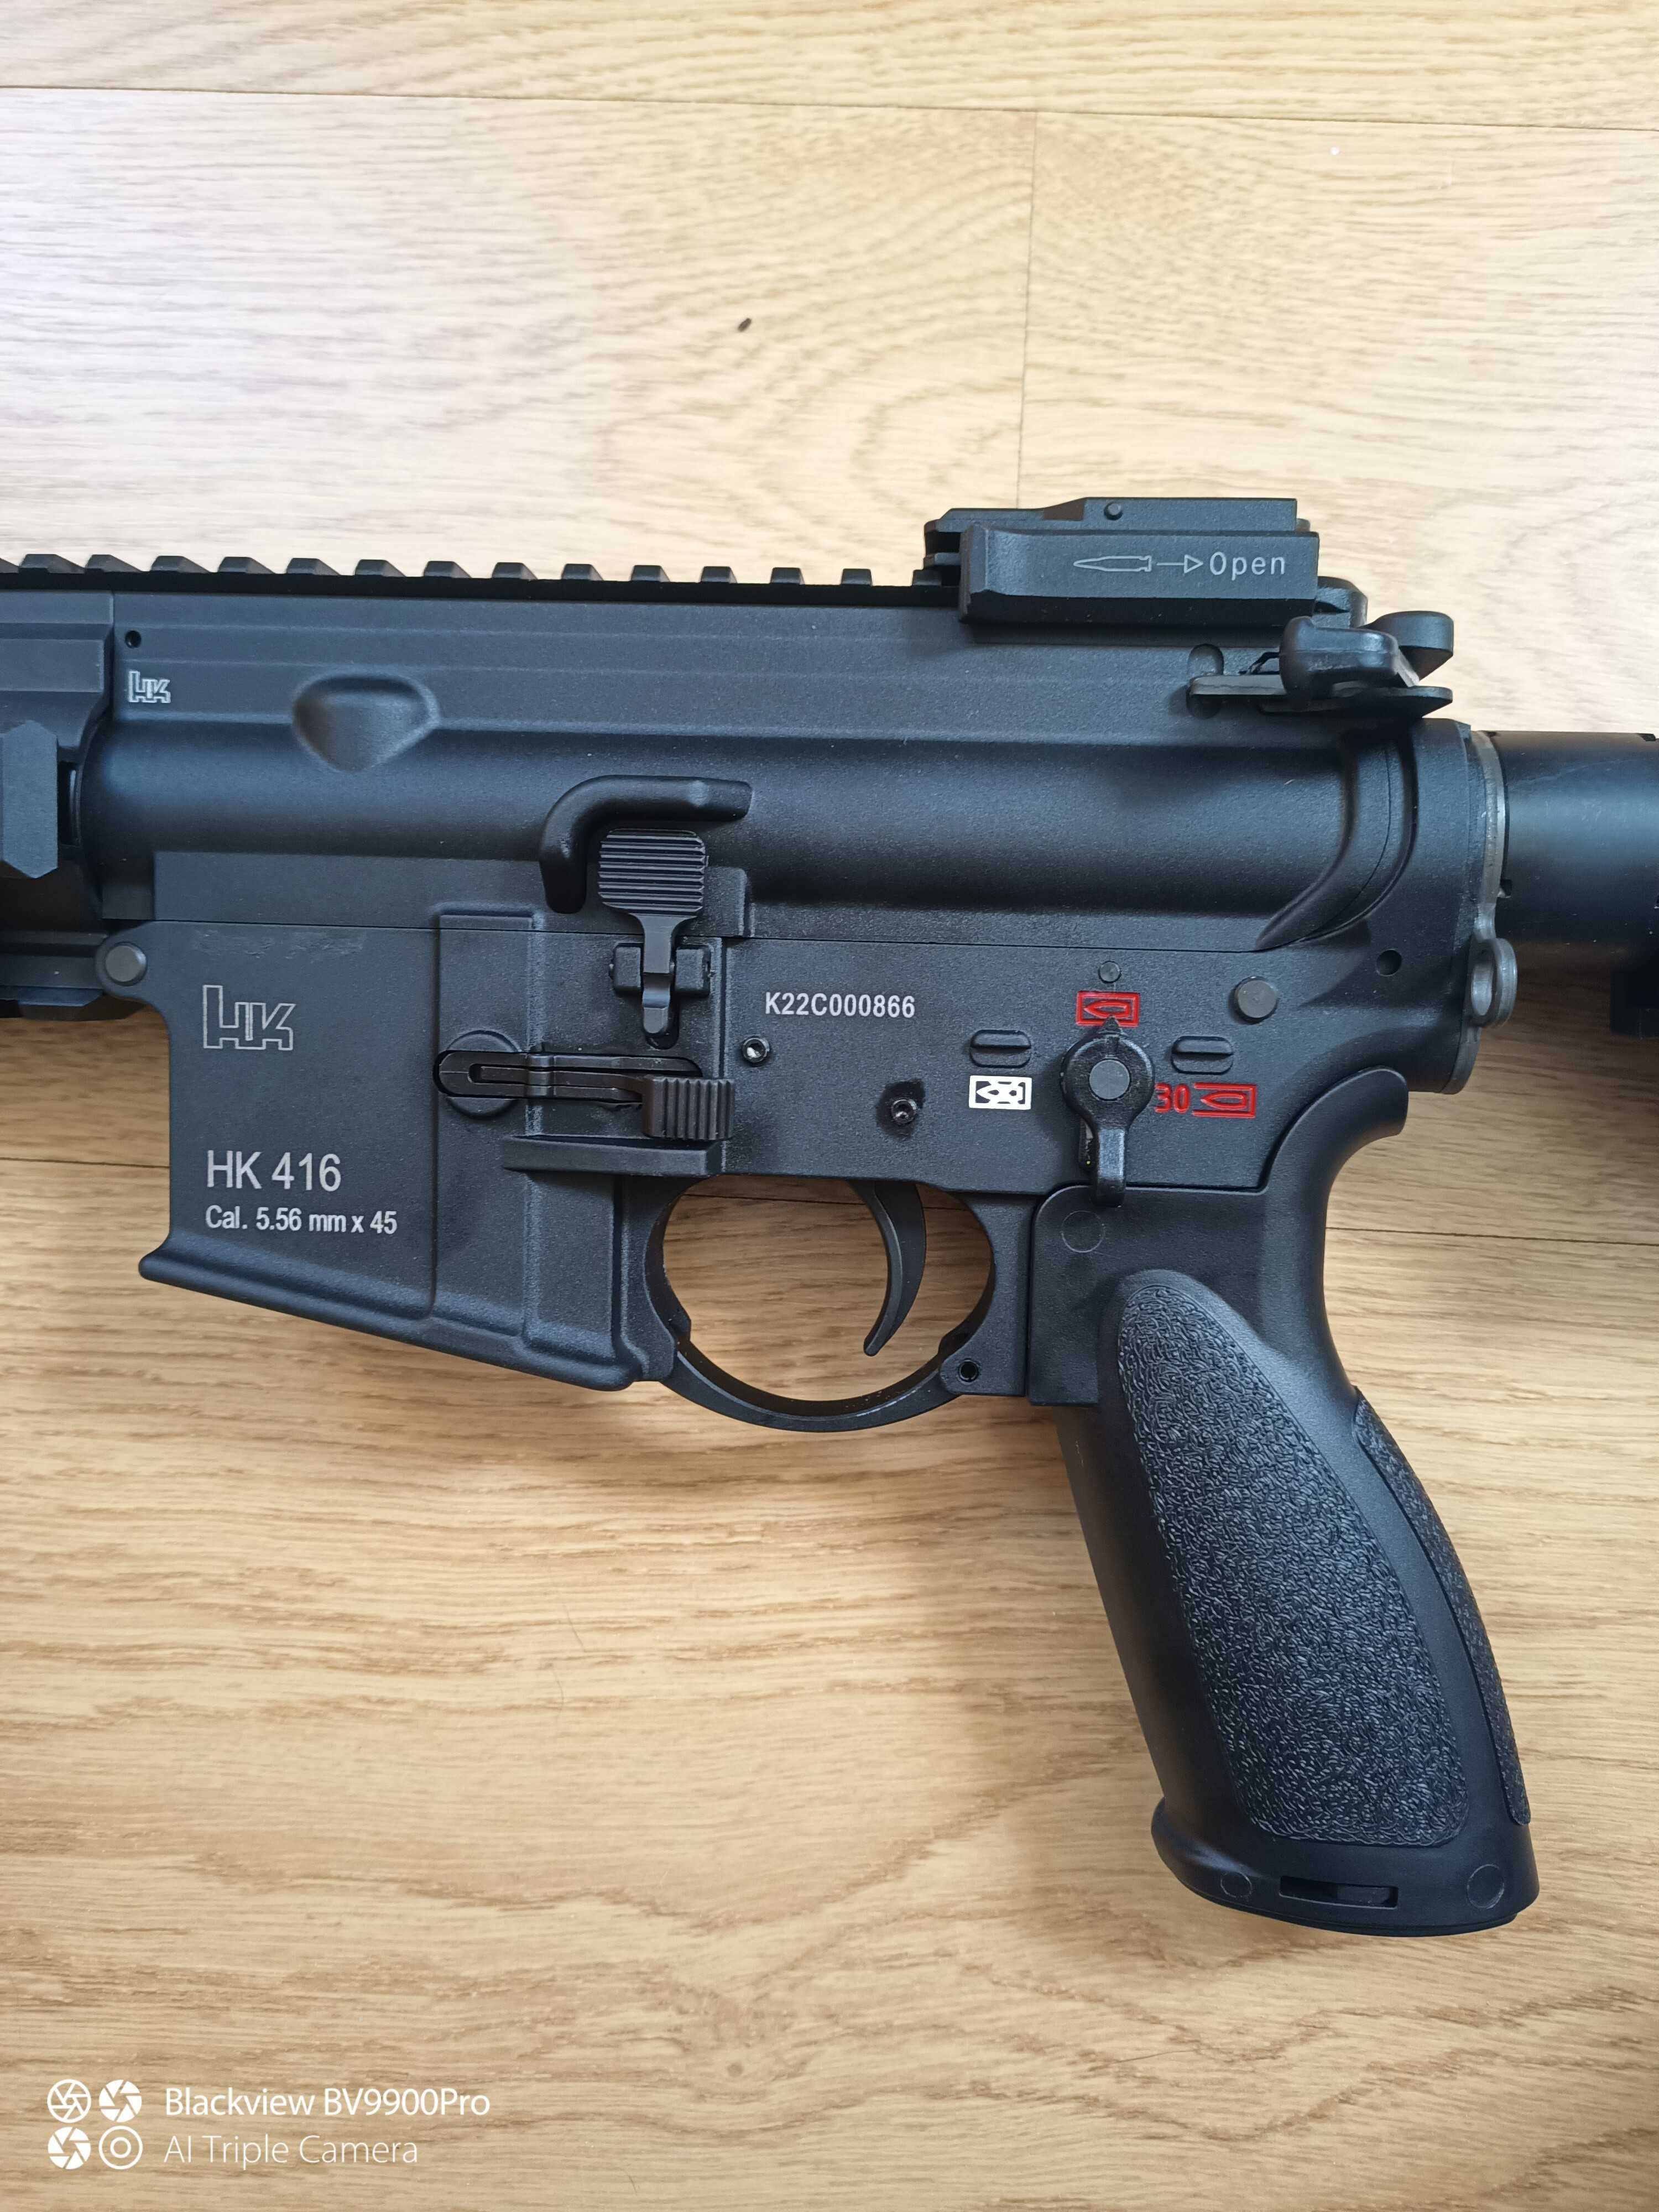 HK416a5 gbbr da umarex/vfc, com 5 mags!